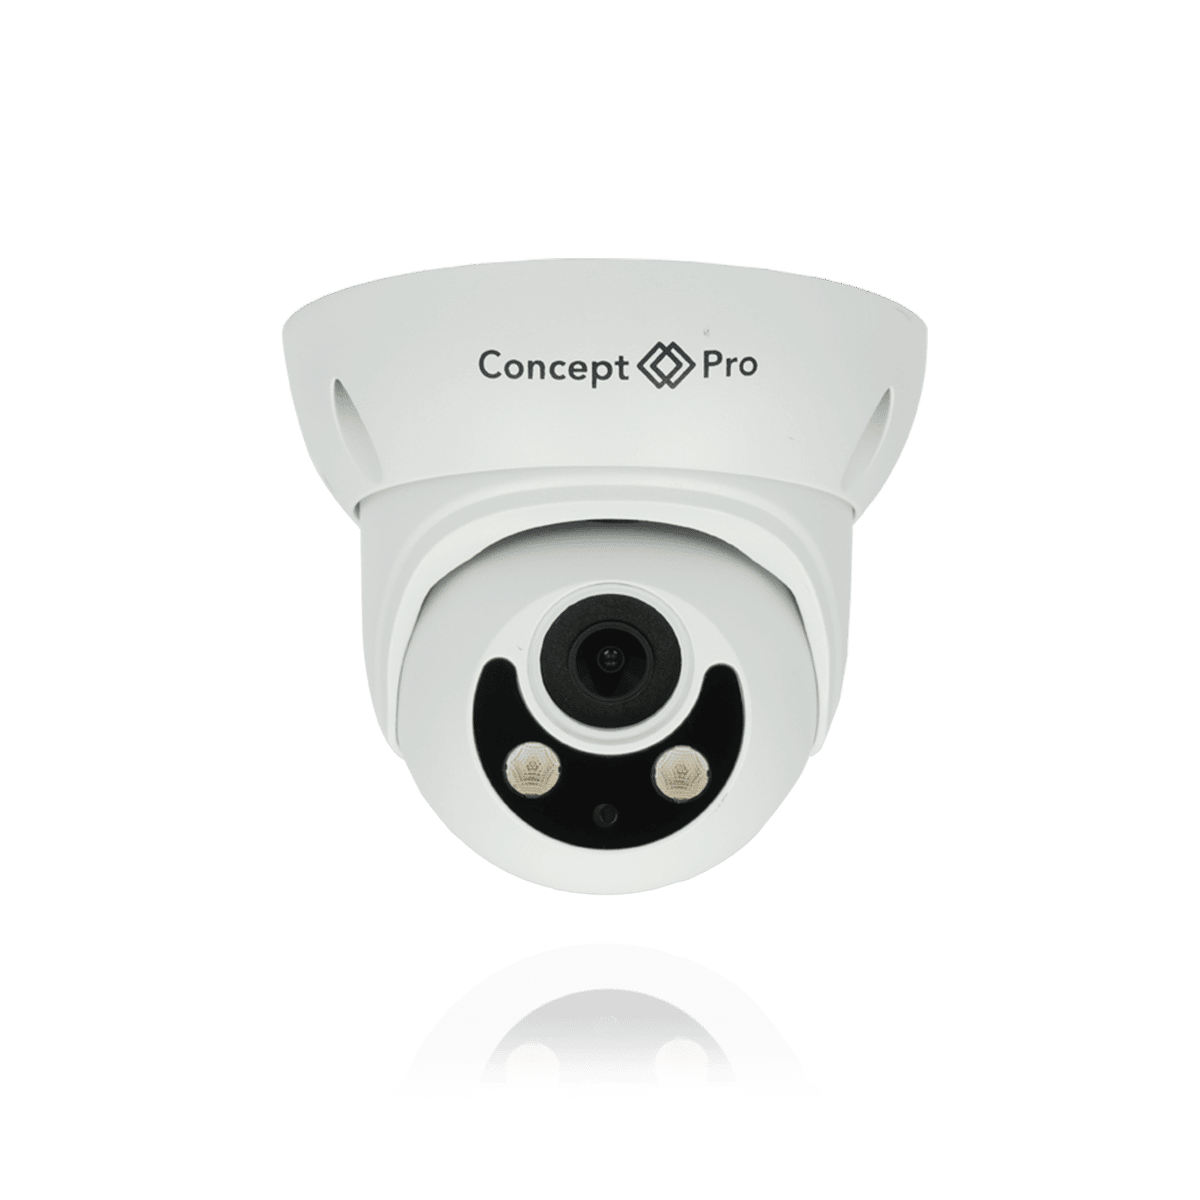 White Concept Pro turret camera